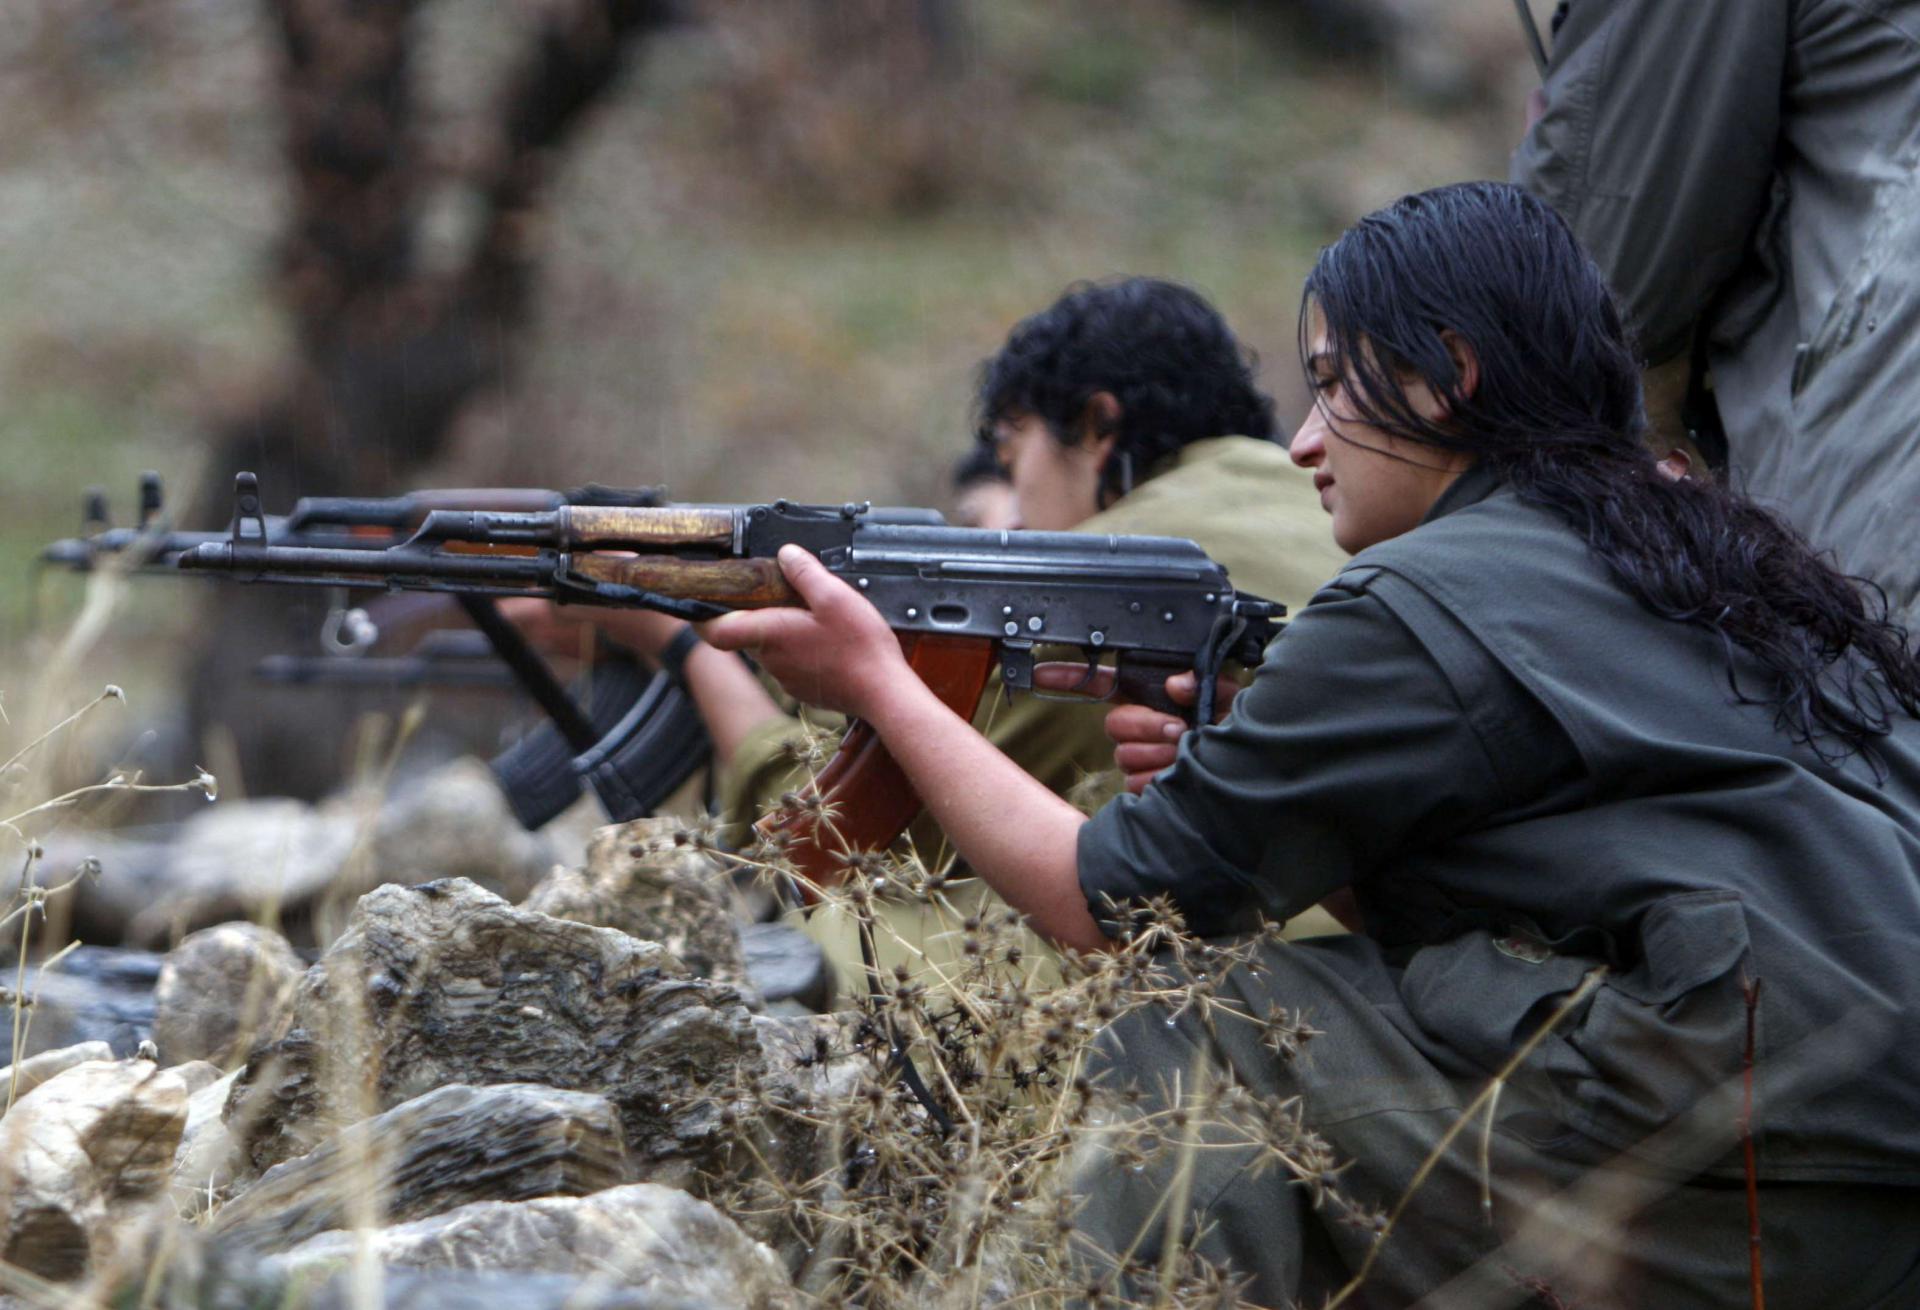 حزب العمال الكردستاني يخوض منذ عقود تمردا مسلحا ضد الدولة التركية